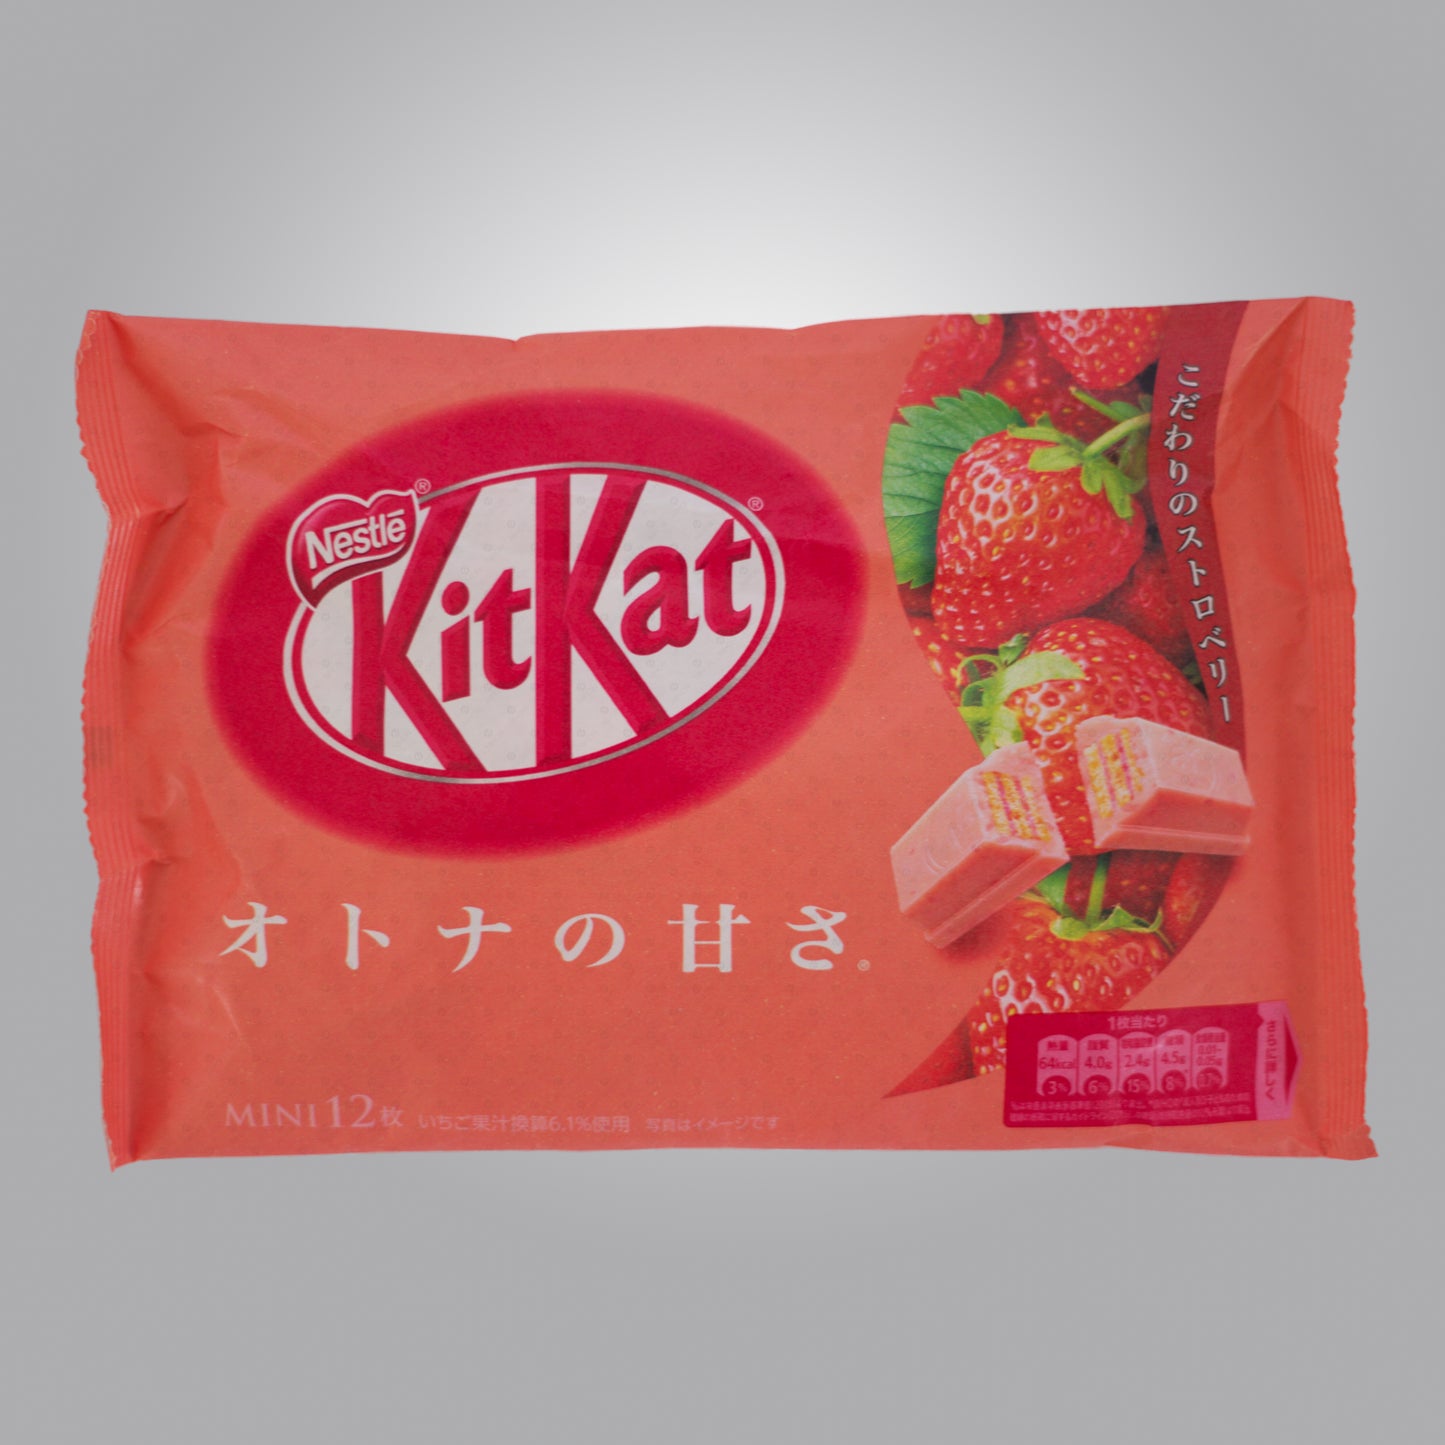 Expired - Melted - Nestle Japanese KitKat Strawberry Mini Bars 11 Pcs